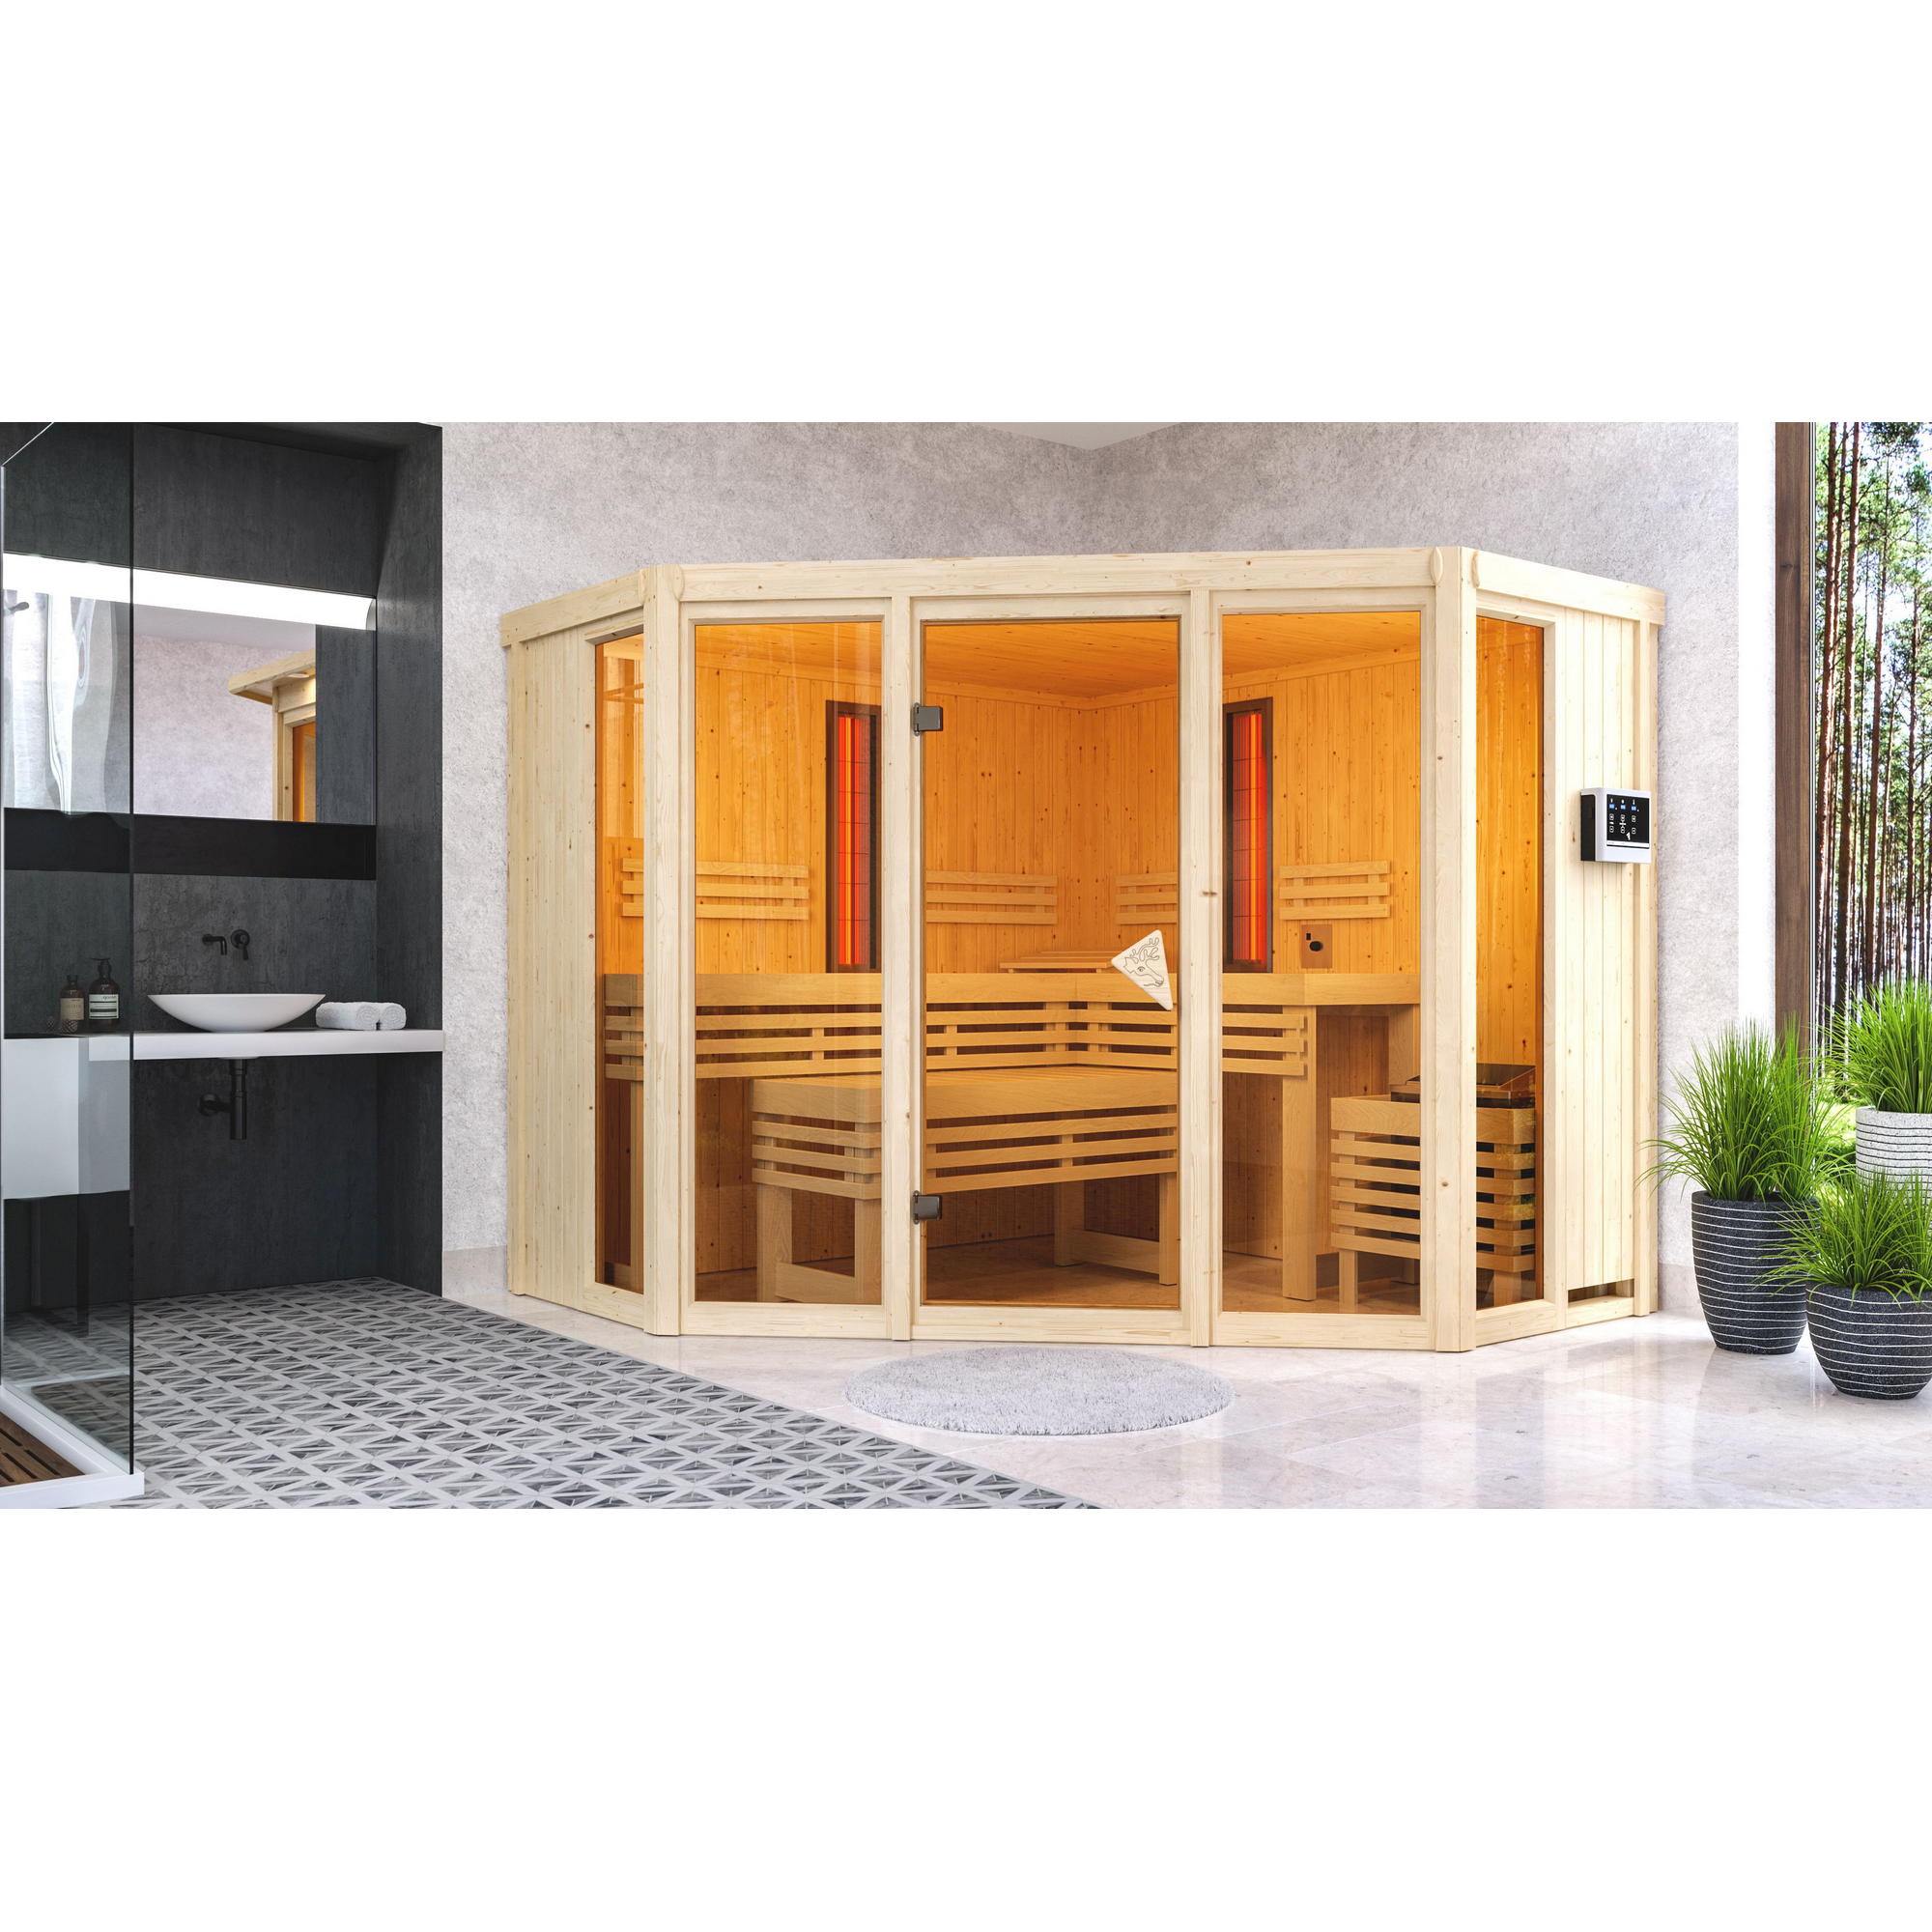 Infrarotkabine 'Aya' naturbelassen mit bronzierter Tür 9 kW Ofen externe Steuerung 231 x 231 x 198 cm + product picture